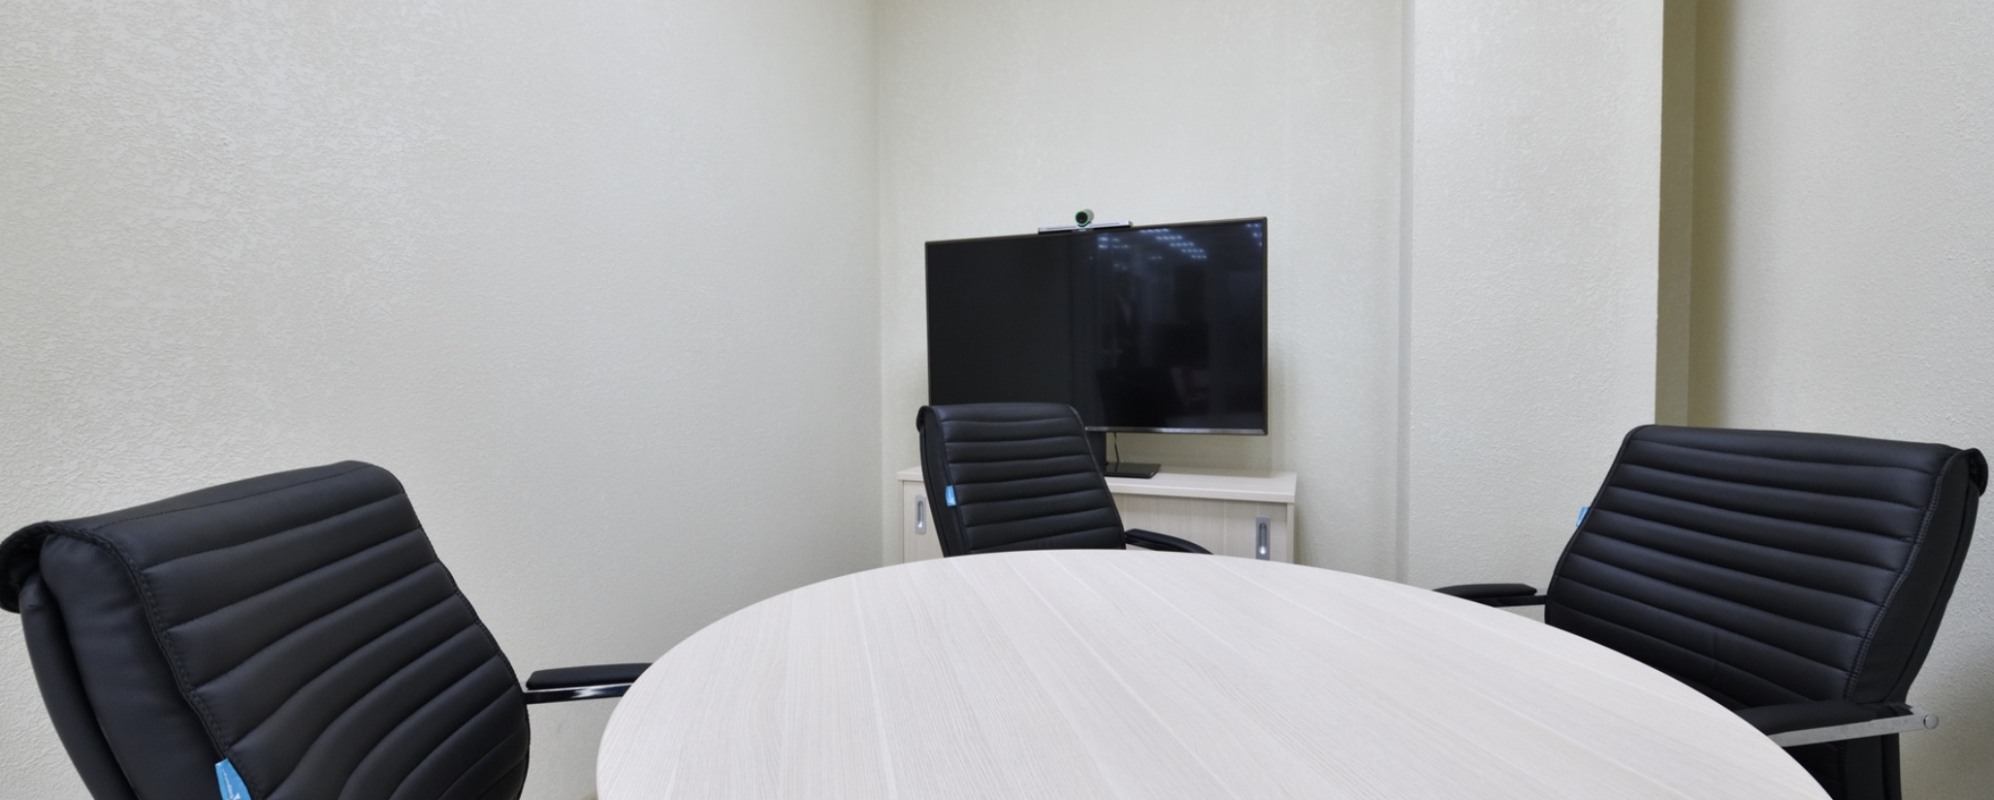 Фотографии комнаты для переговоров Мой бизнес Малая переговорная комната